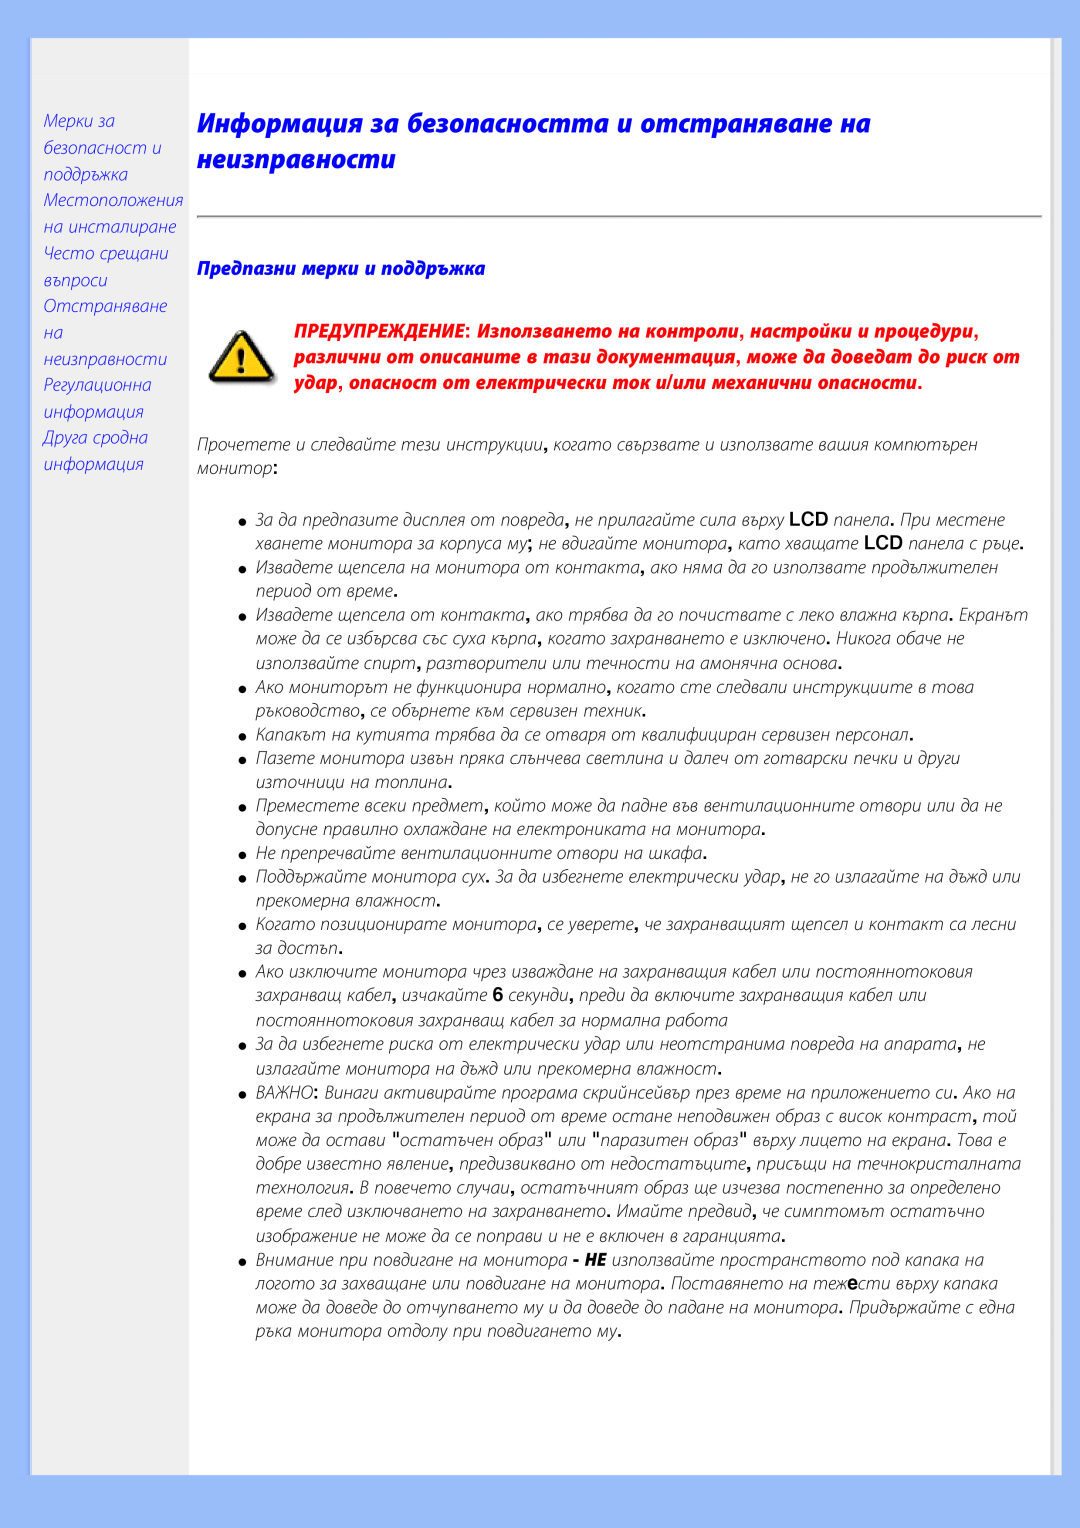 Philips 200BW8 user manual Информация за безопасността и отстраняване на неизправности, Предпазни мерки и поддръжка 